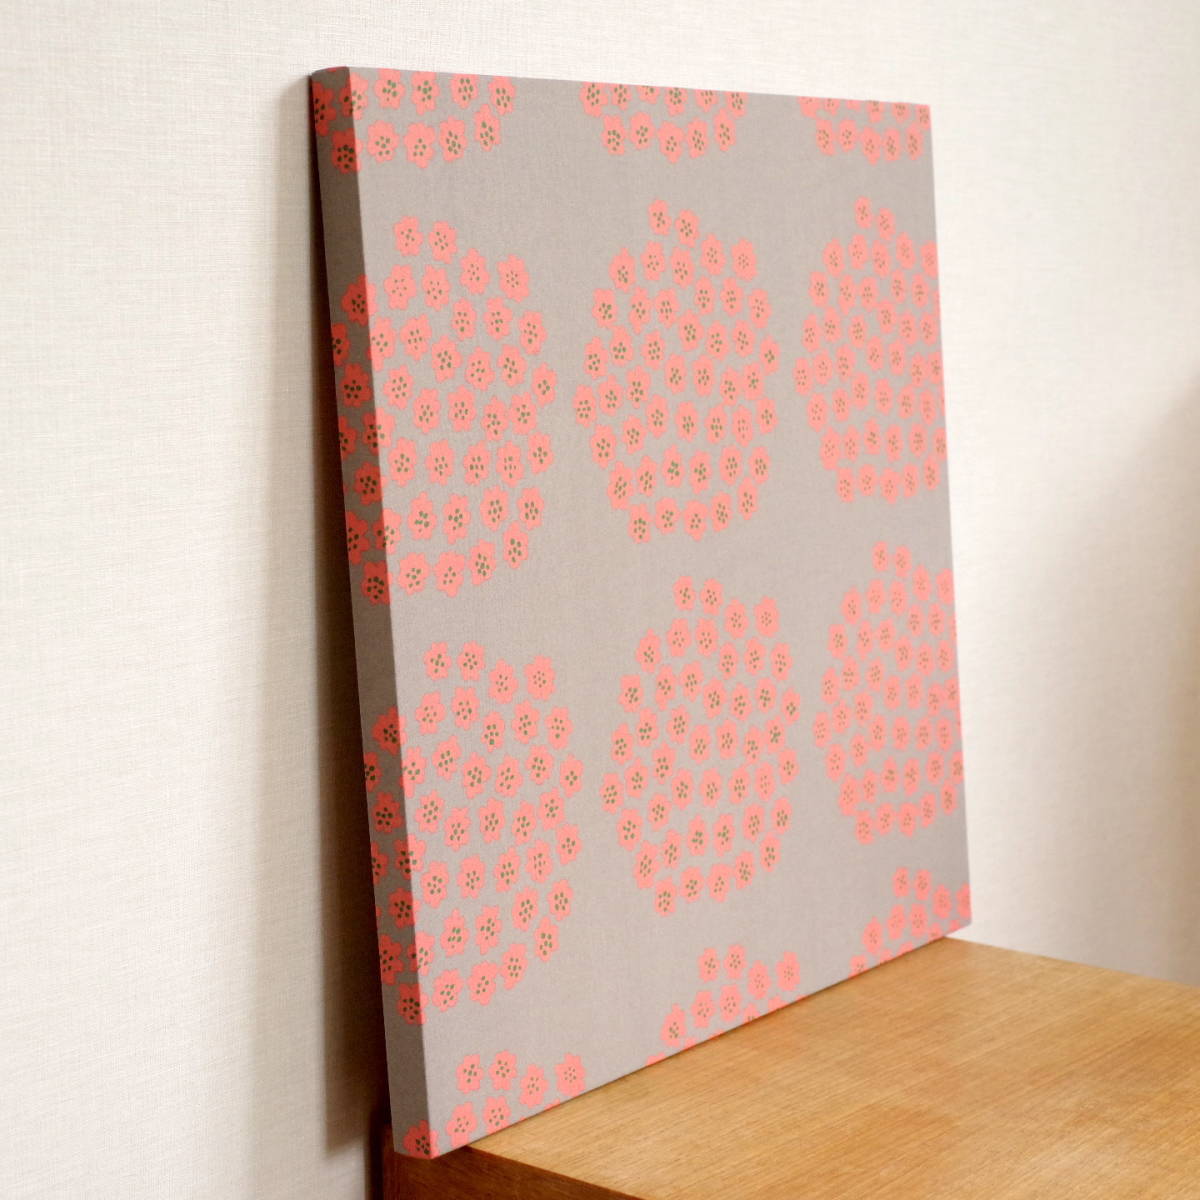  текстильная панель Северная Европа marimekko Puketti 41×41cm Marimekko искусство panel ограничение снят с производства ткань интерьер орнамент серый розовый 